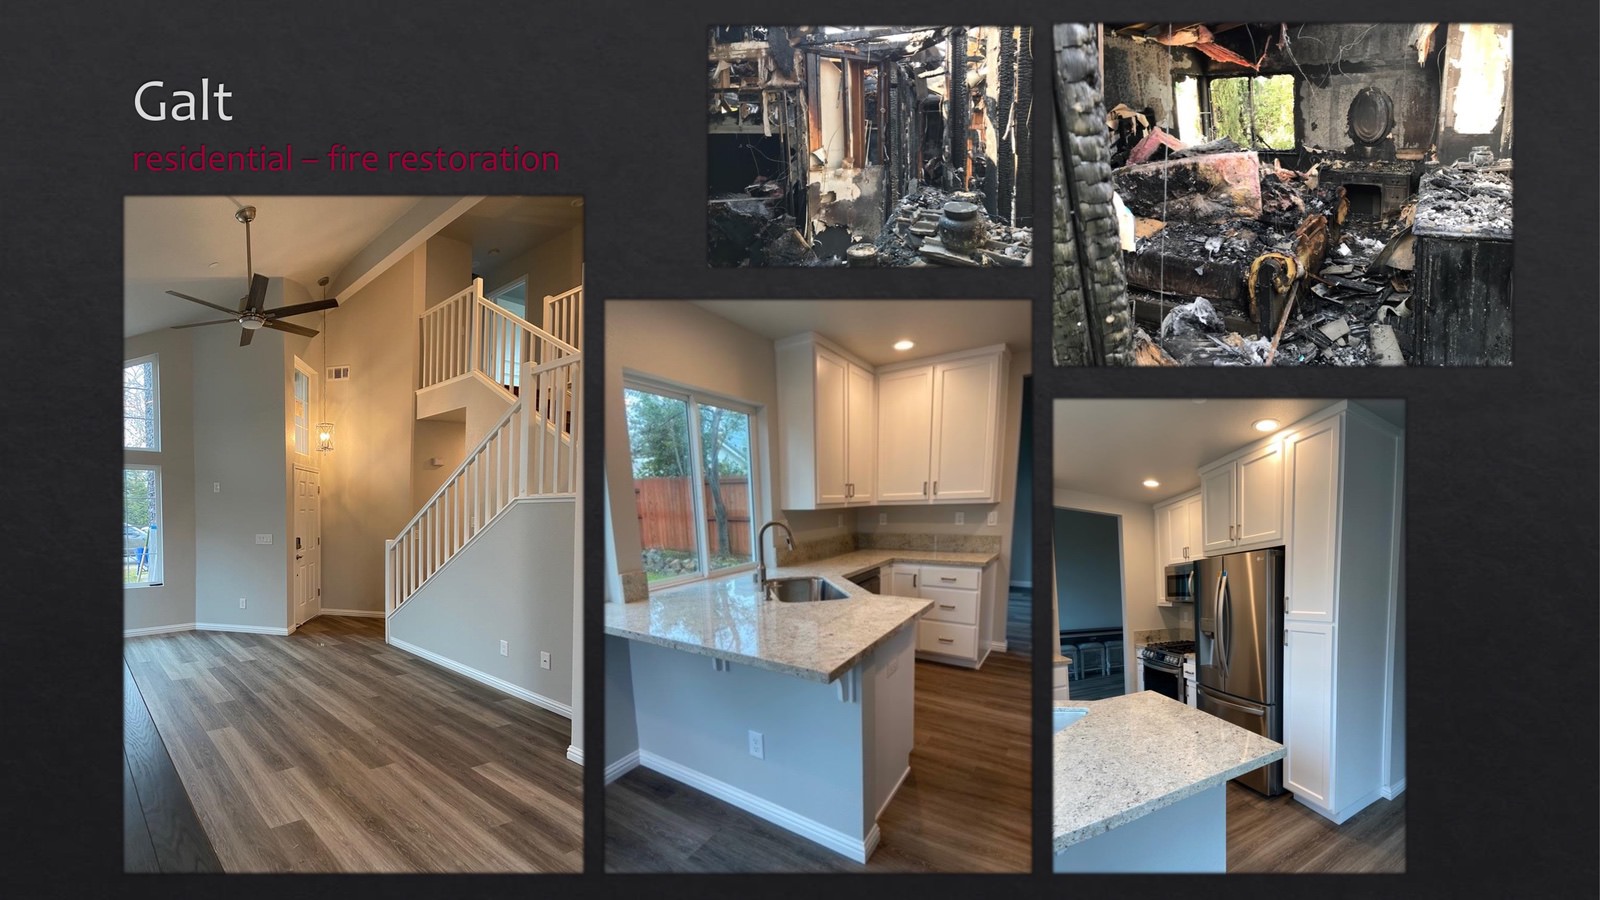 Galt Residential fire restoration - kitchen + stairs